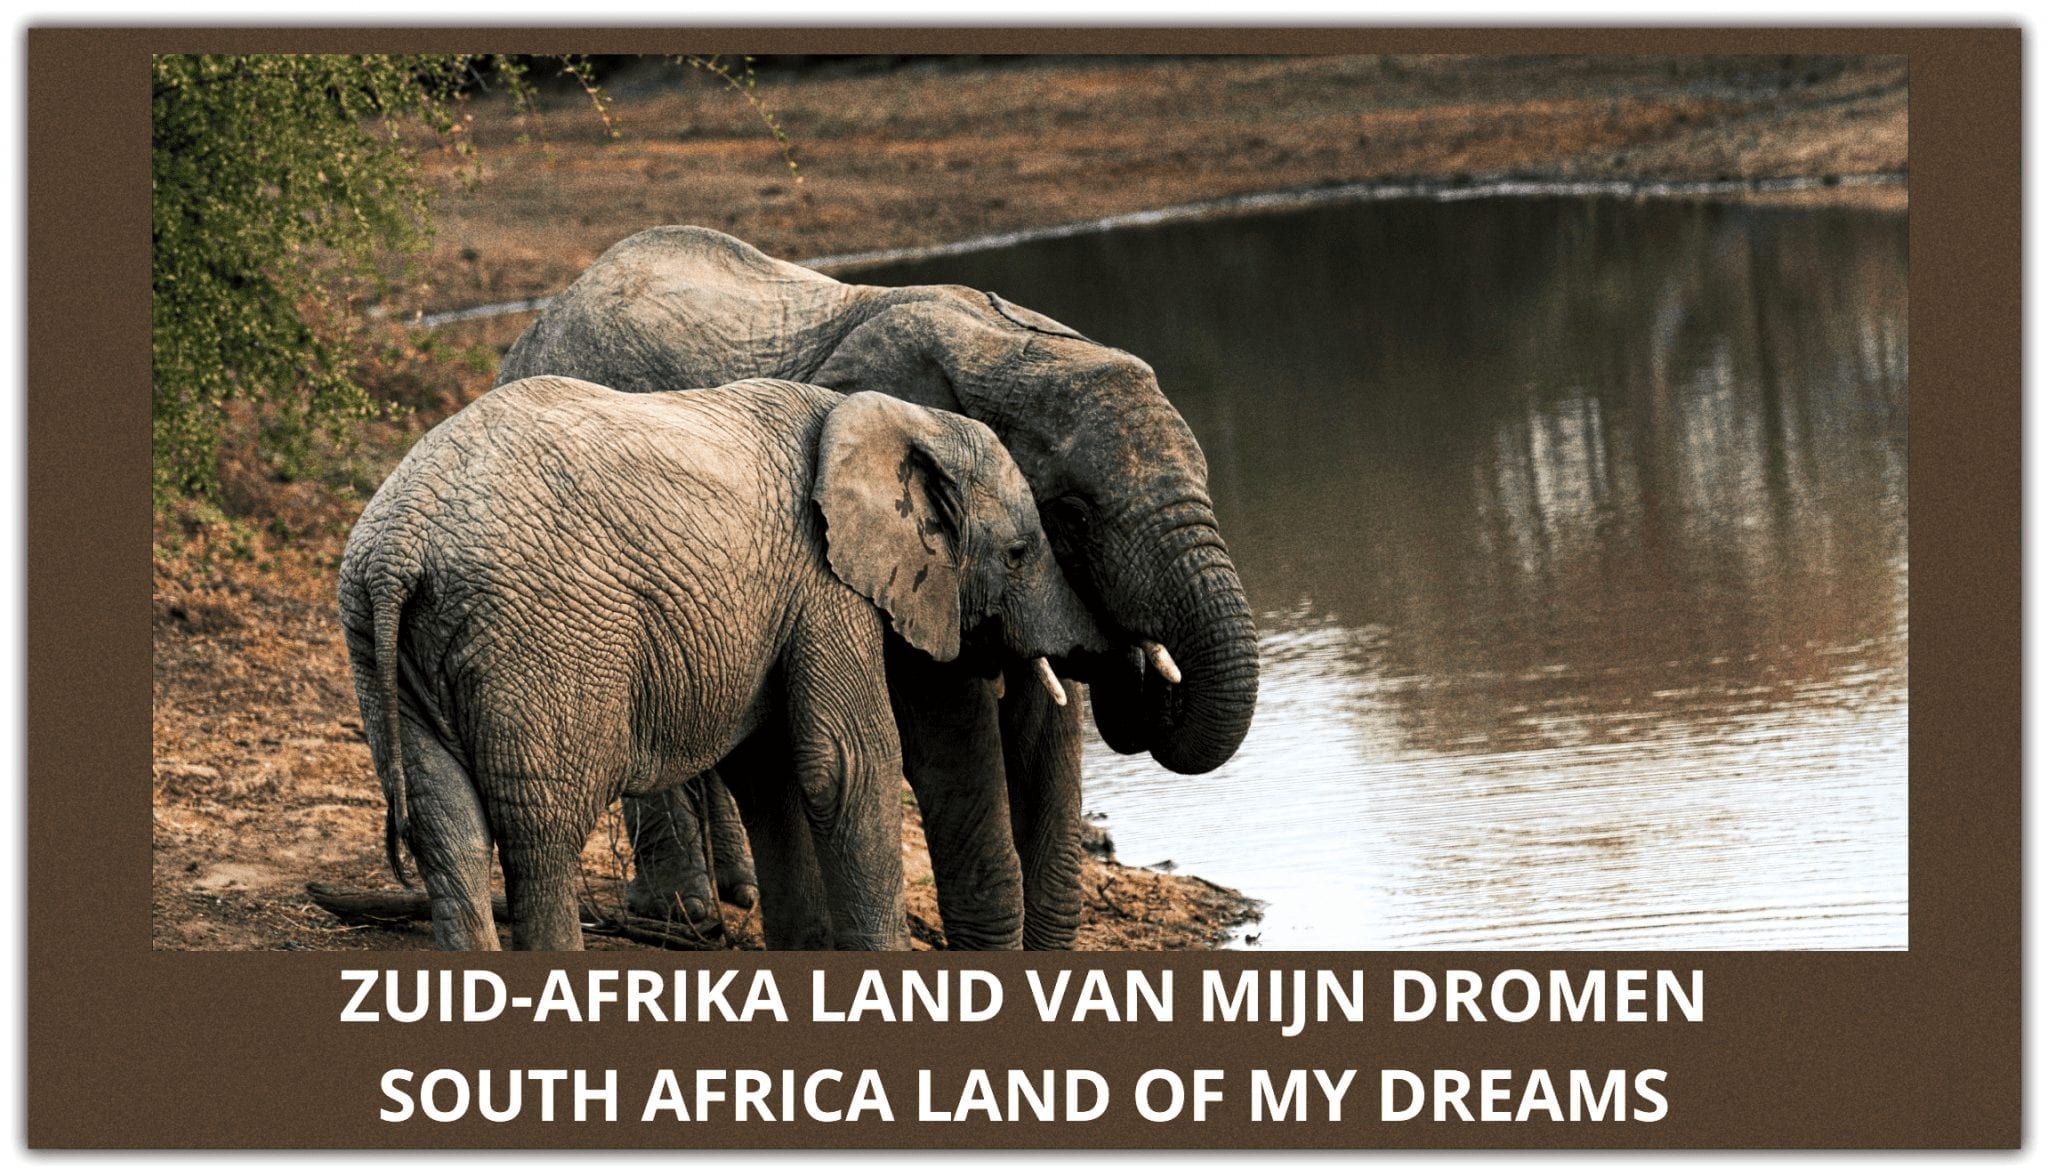 Ik droom van Zuid Afrika |Ek droom van Suid-Afrika |I dream of South Africa❤️❤️❤️